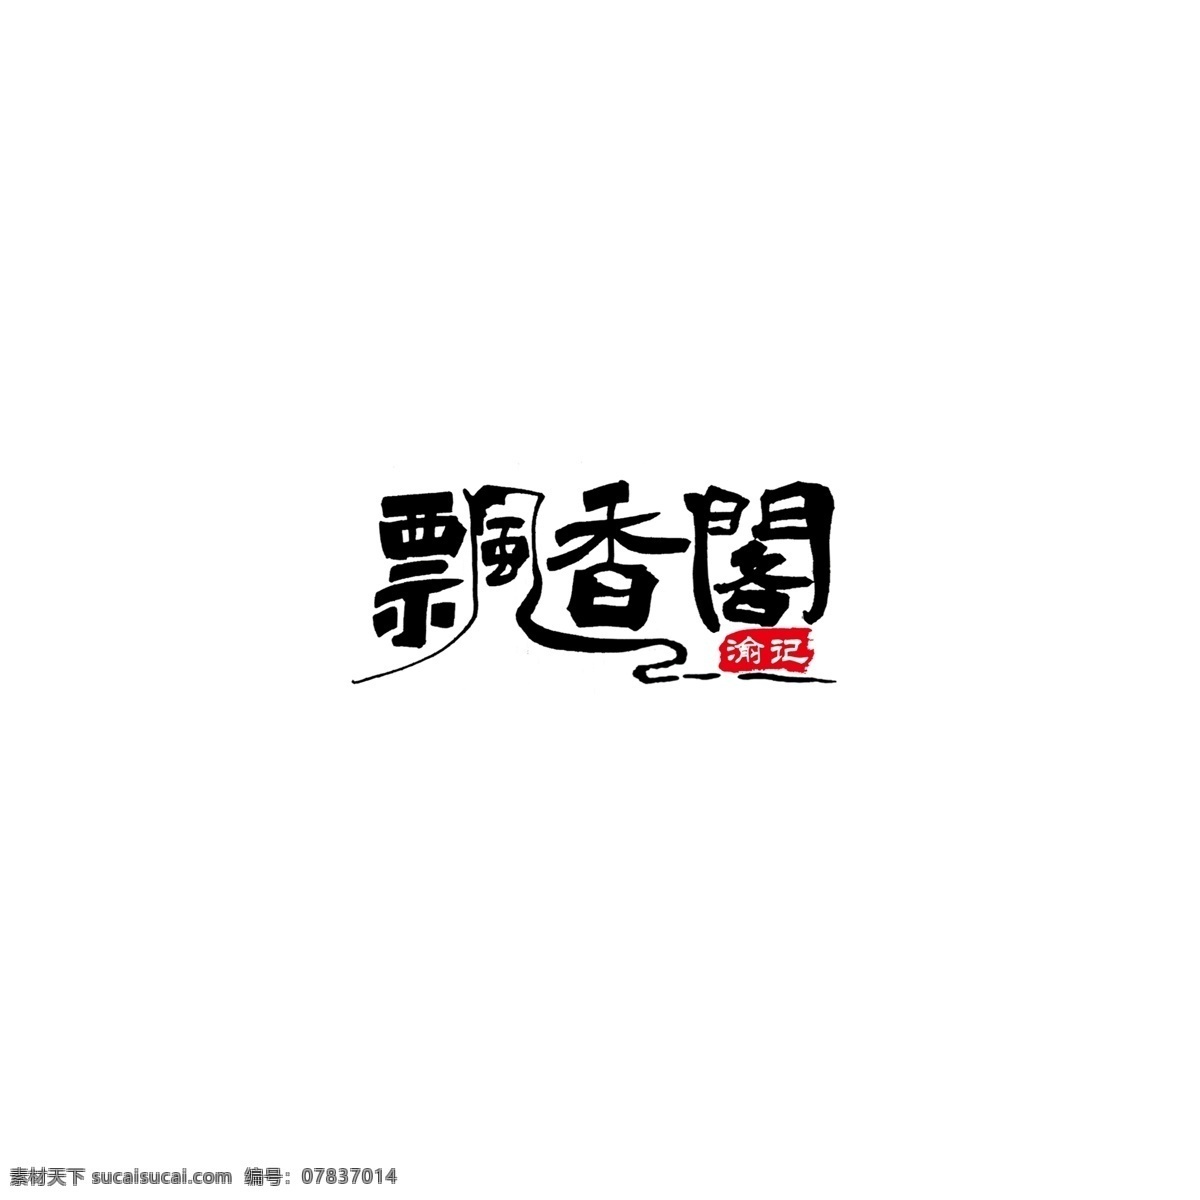 简约 中国 风 手写 字体 餐饮 l 飘香 阁 logo 餐饮logo 简约风 字体设计 飘香阁 印章 餐饮店